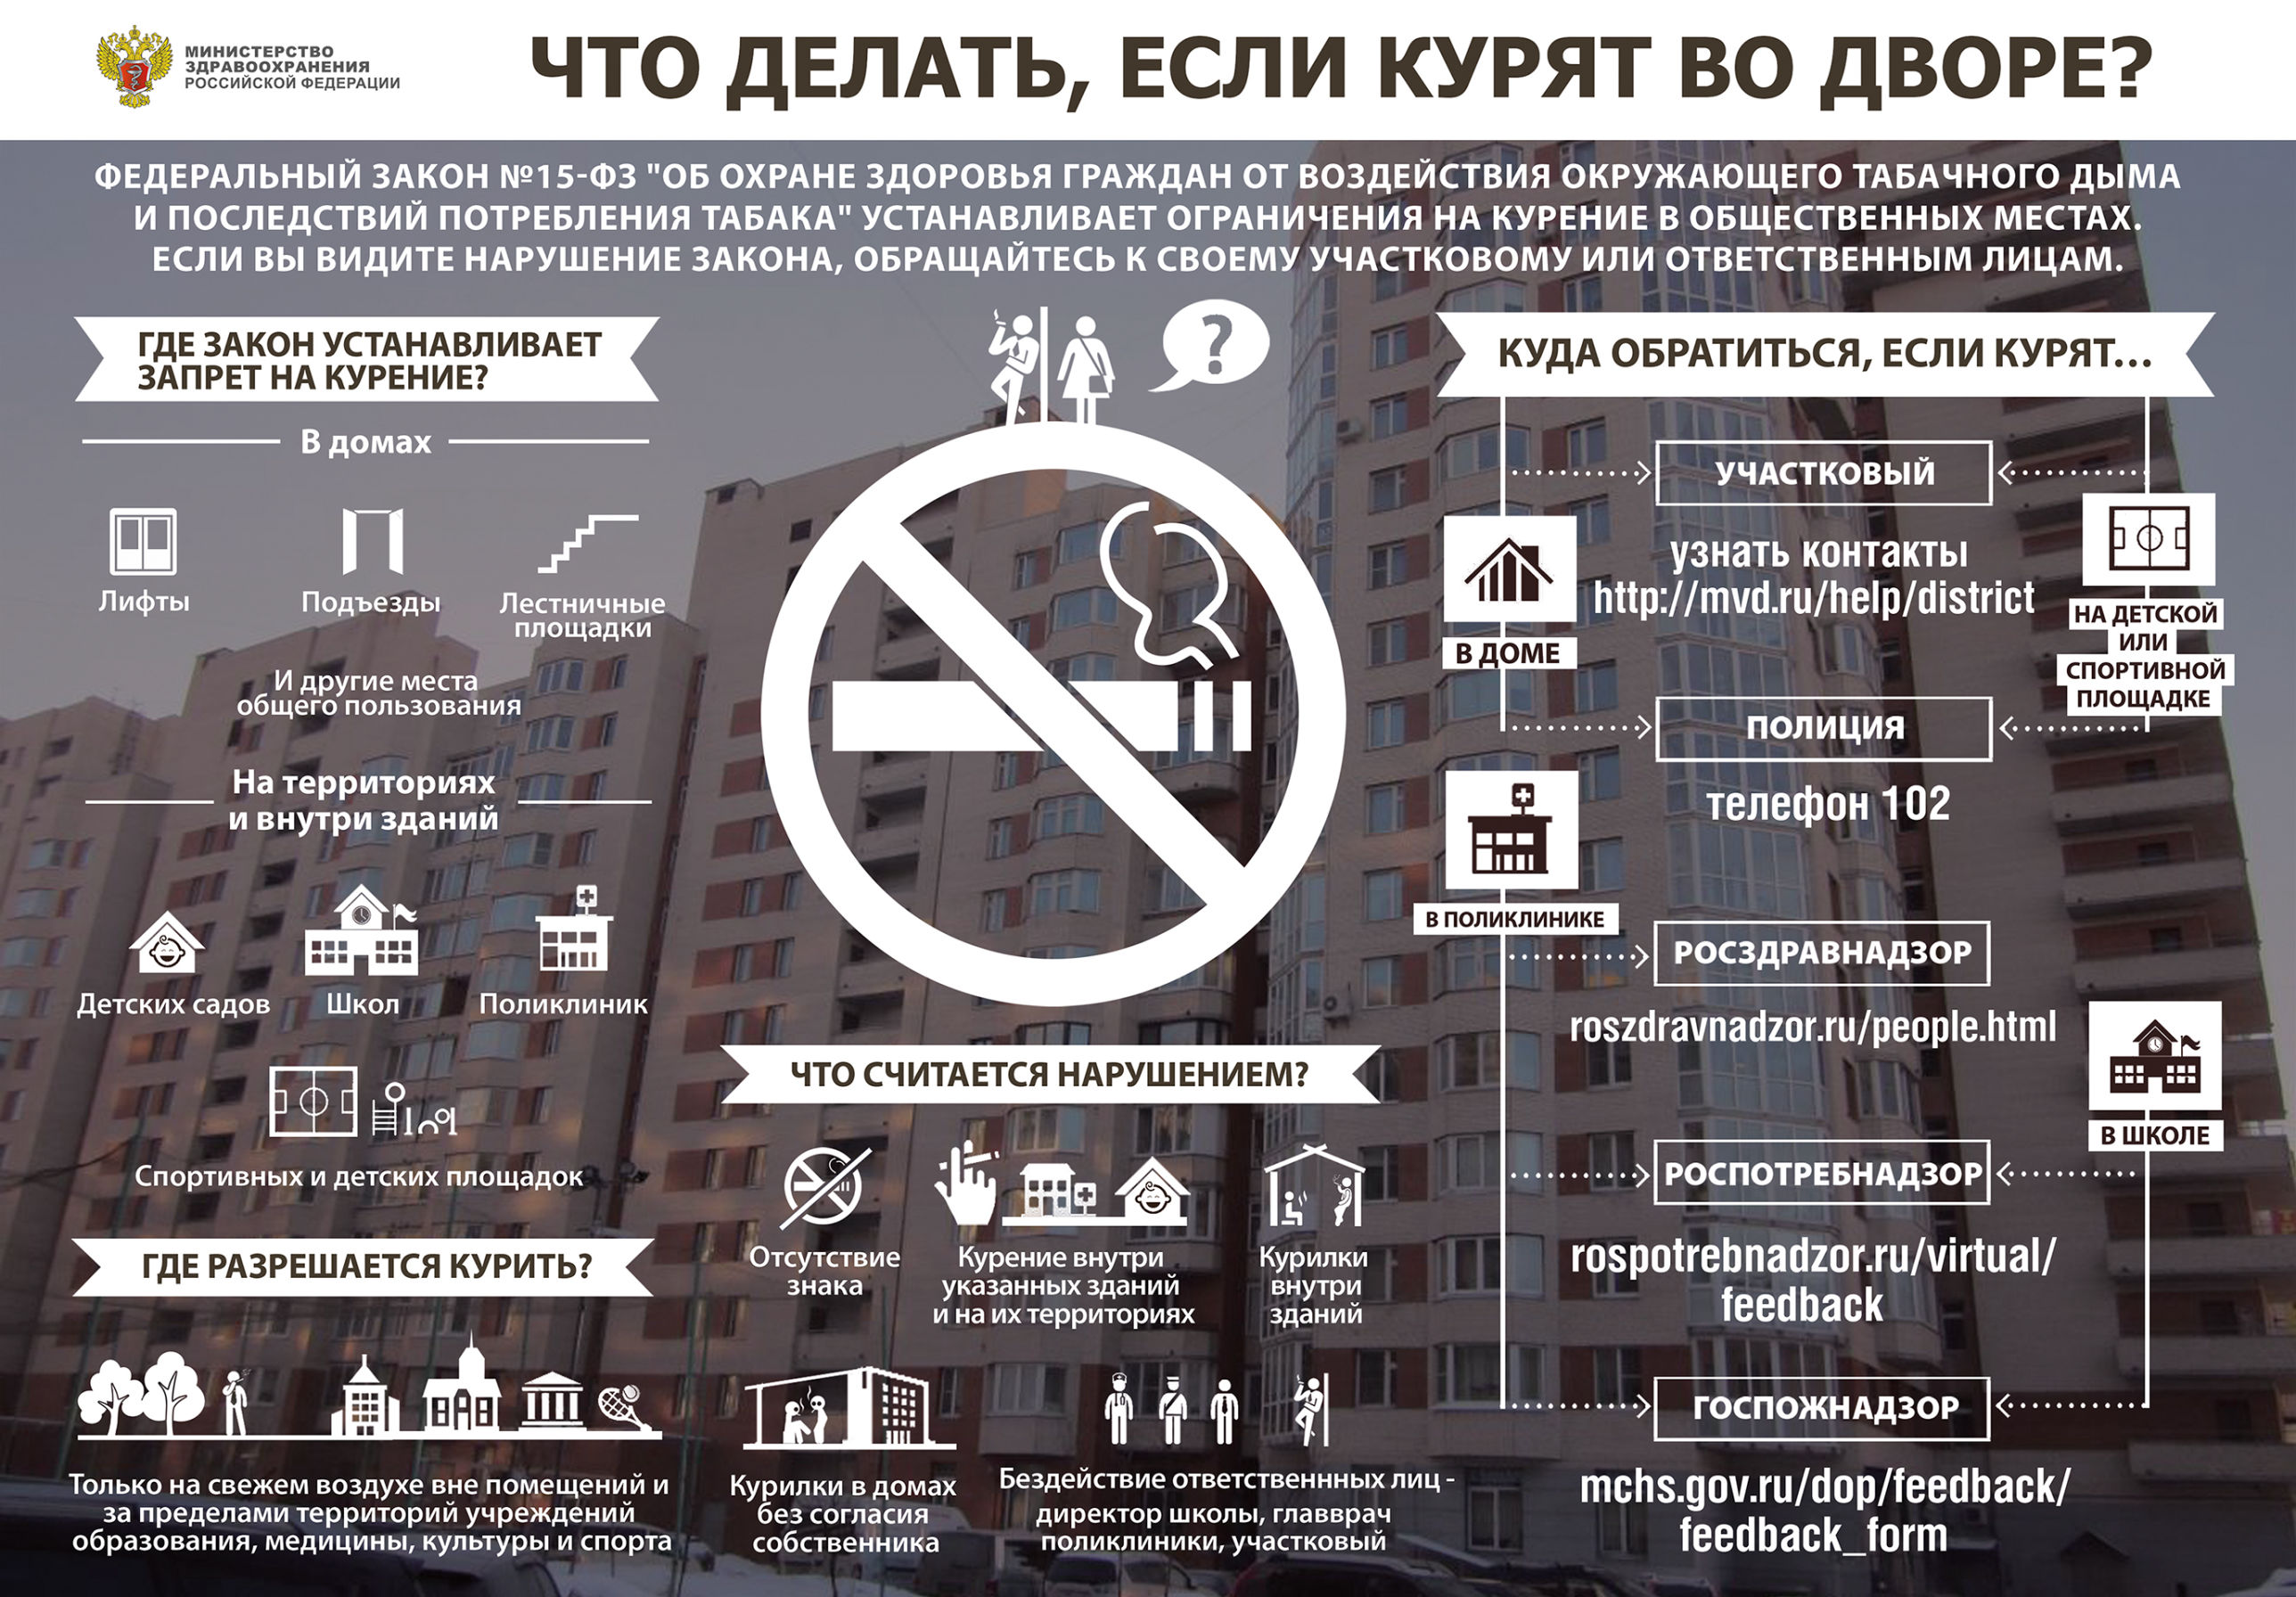 Общие балконы можно курить. Закон о курении. Запрет курения в общественных местах. Закон о запрете курения в общественных местах. Законодательство о курении в общественных местах.